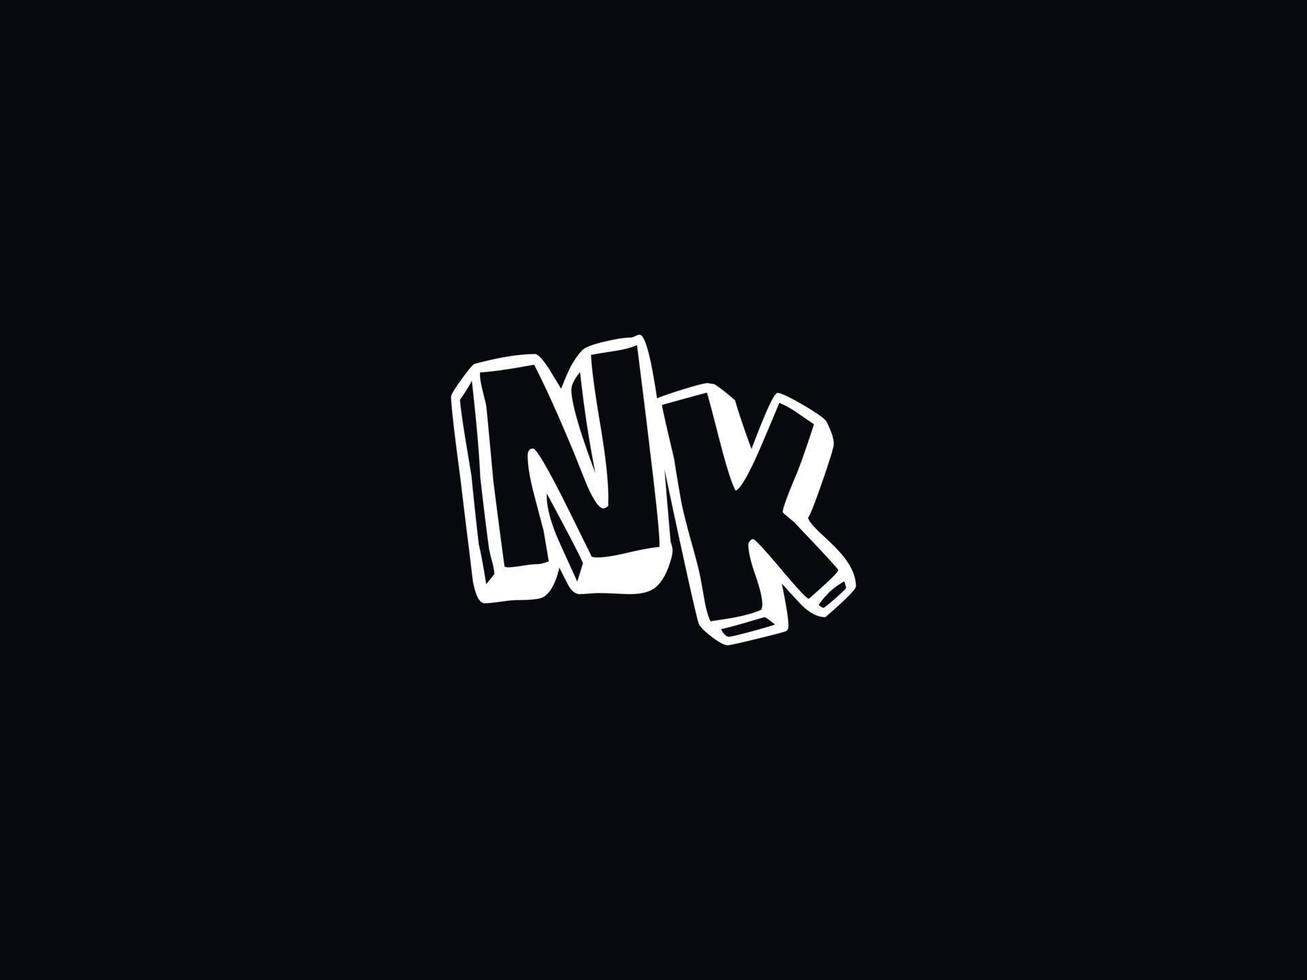 abstrakt nk Logo Bild, modern nk minimalistisch Brief Logo vektor